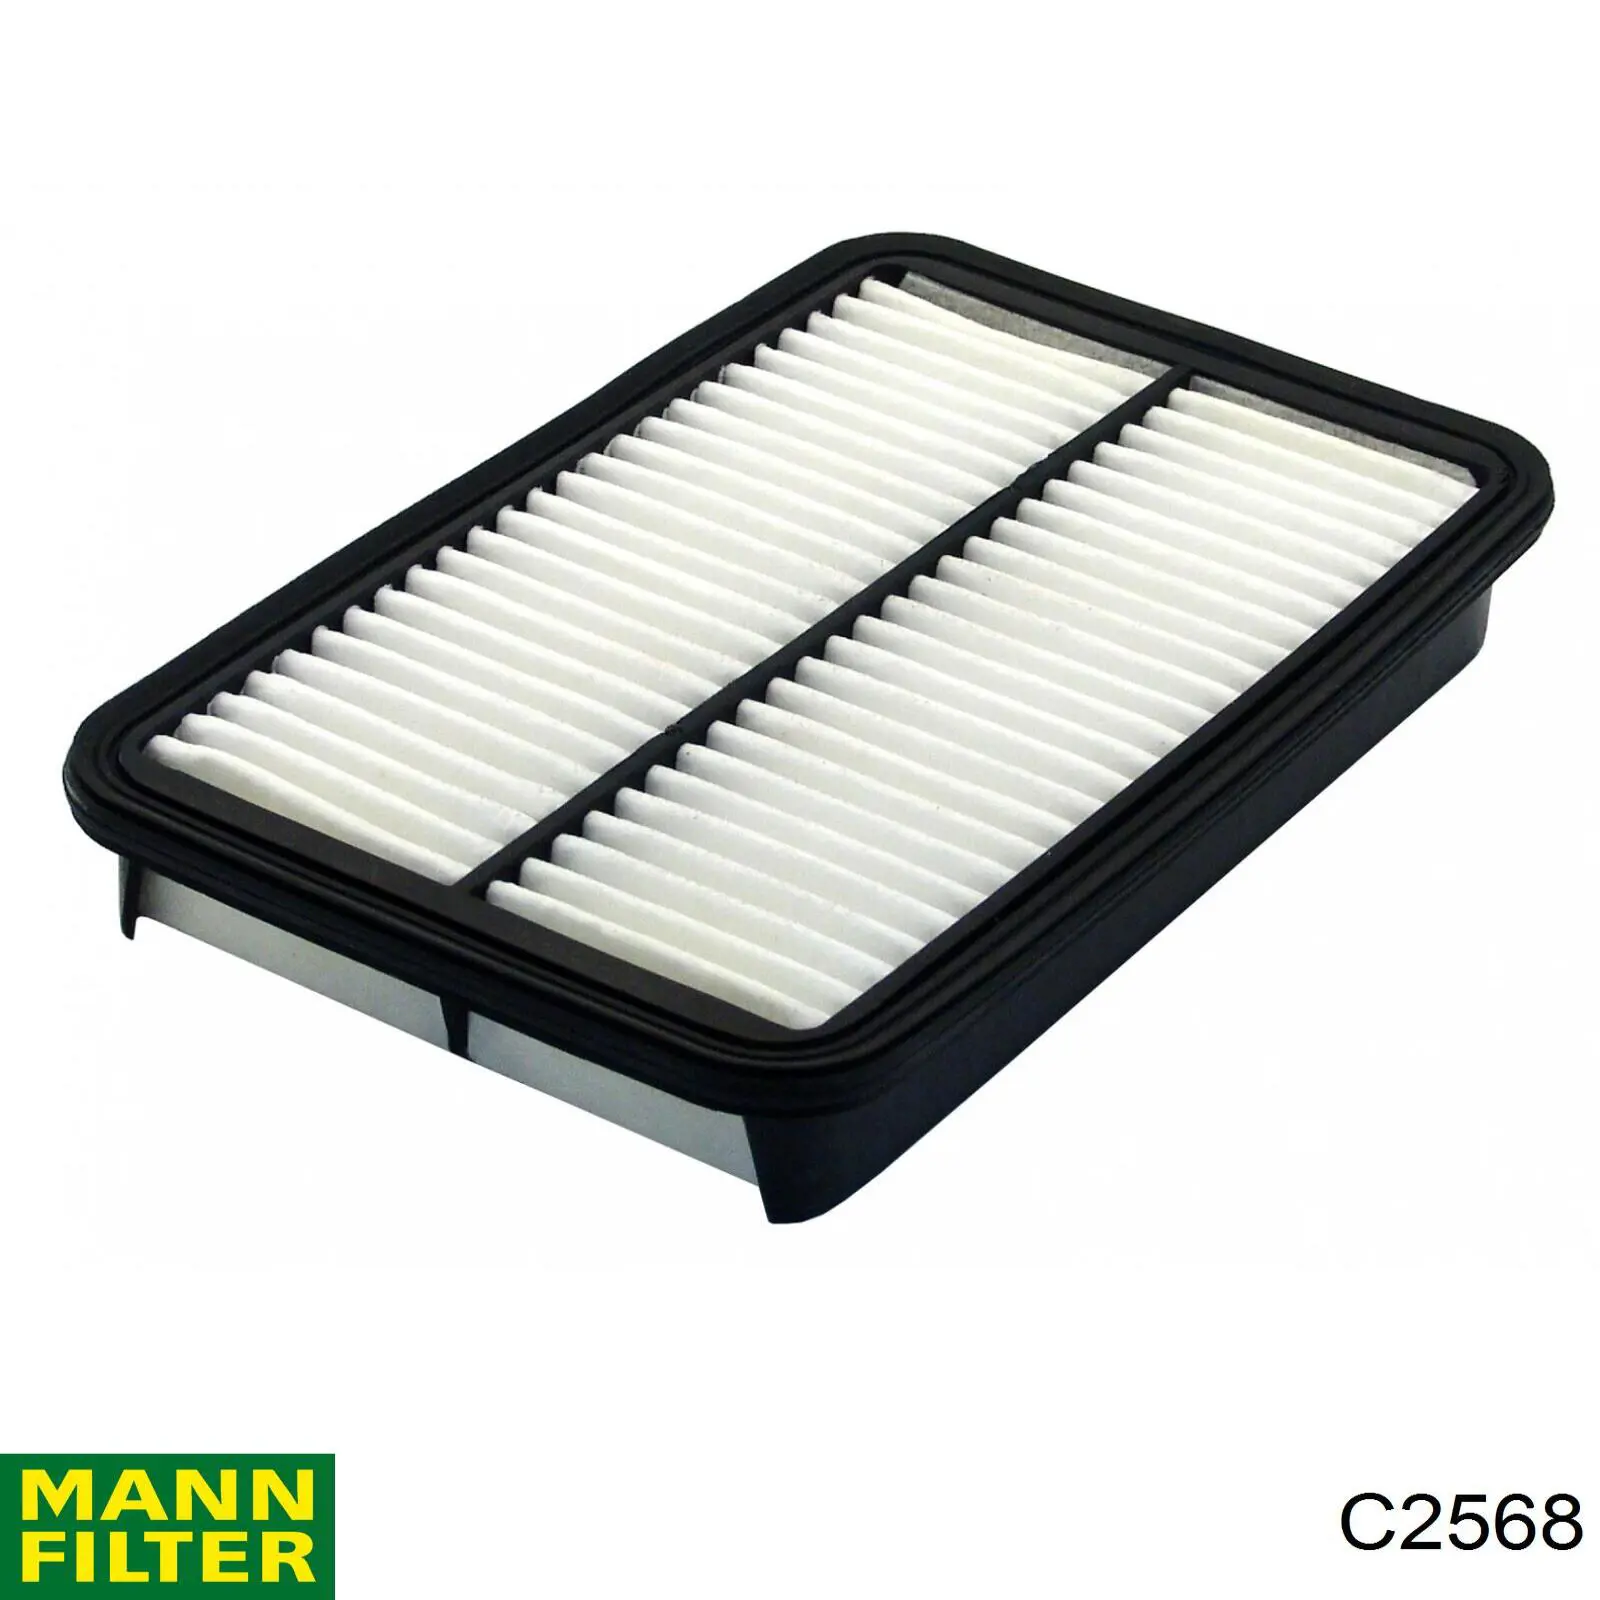 Filtro de aire C2568 Mann-Filter